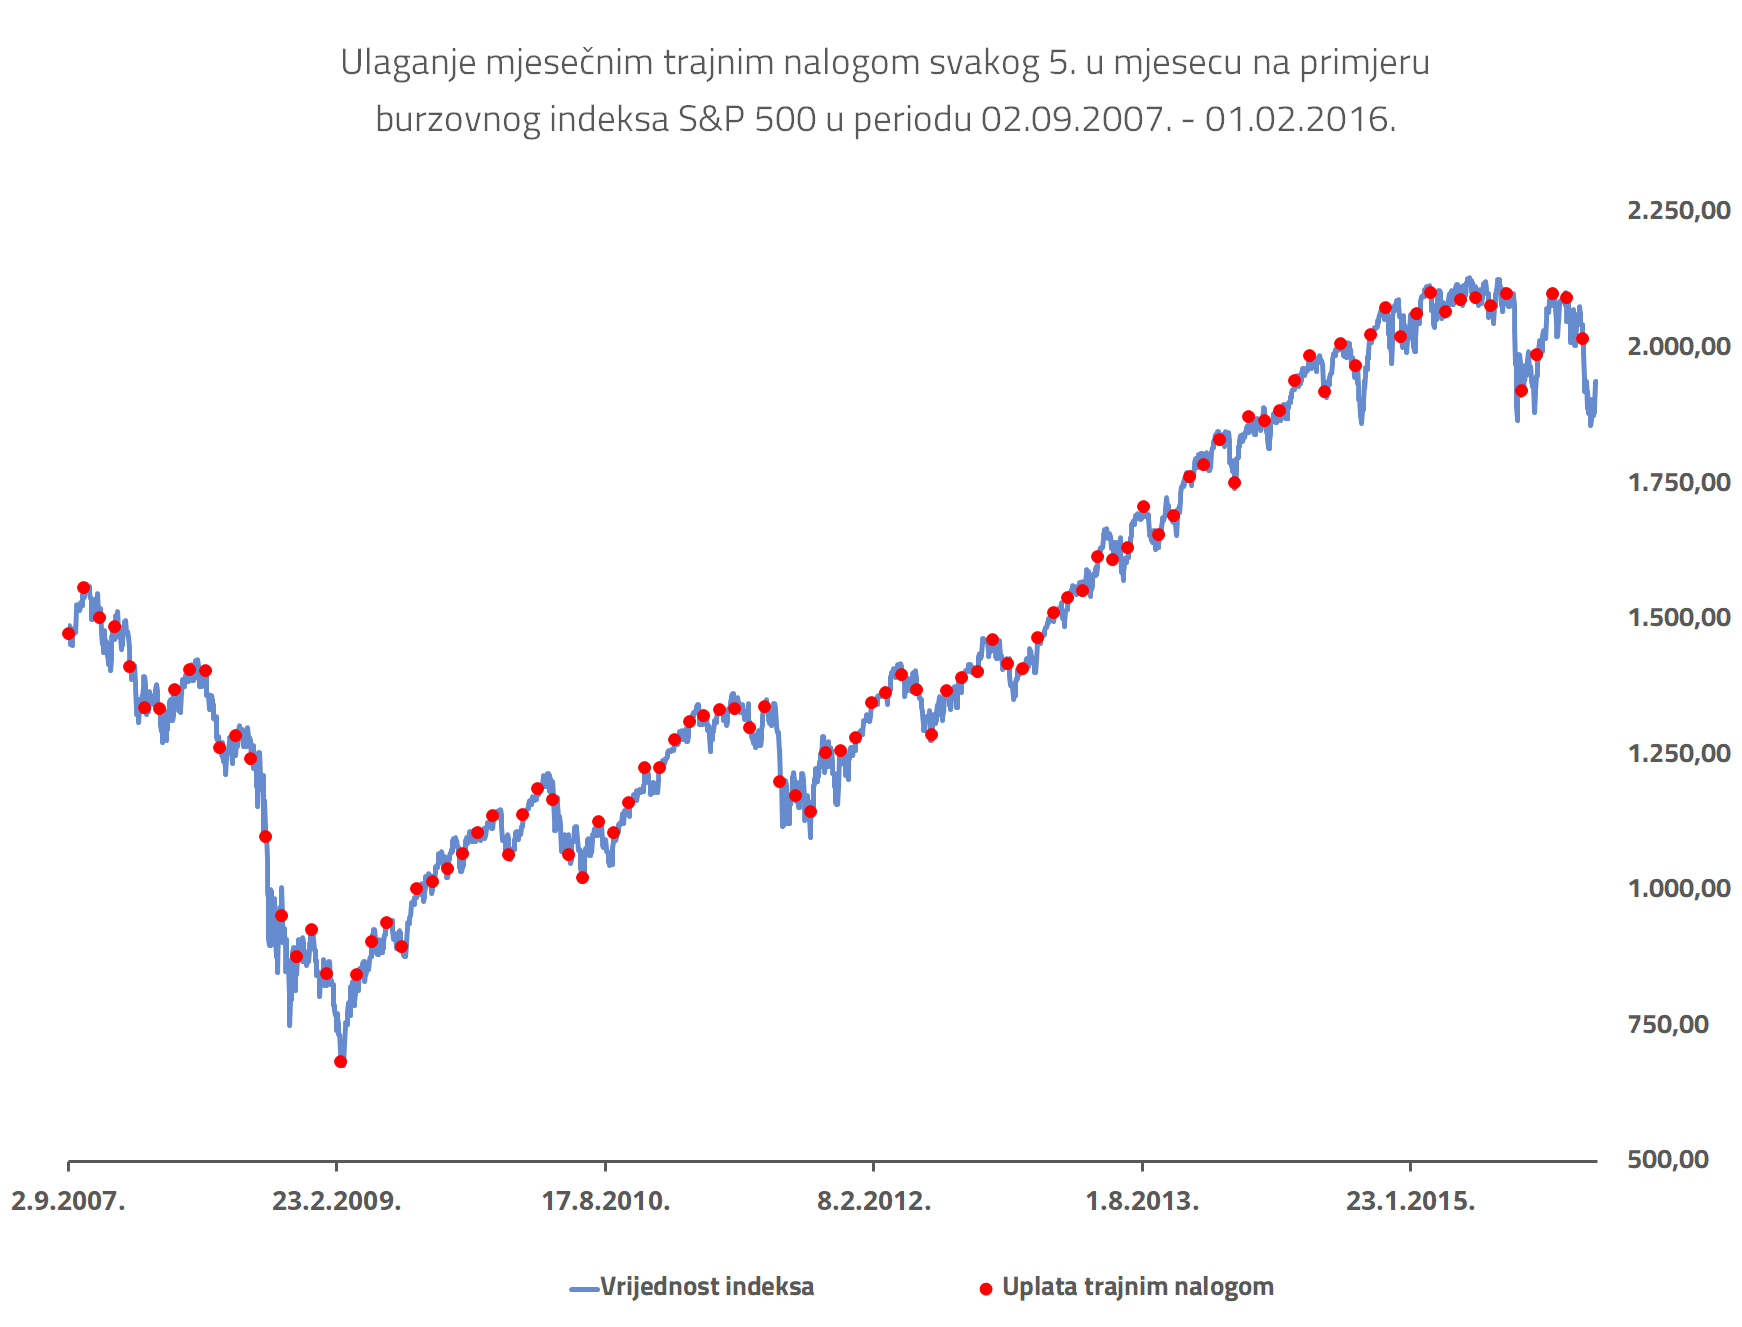 Trajni nalog - graf S&P 500 s prikazom uplata trajnim nalogom kroz period od oko 9 godina (2007. - 2016.)